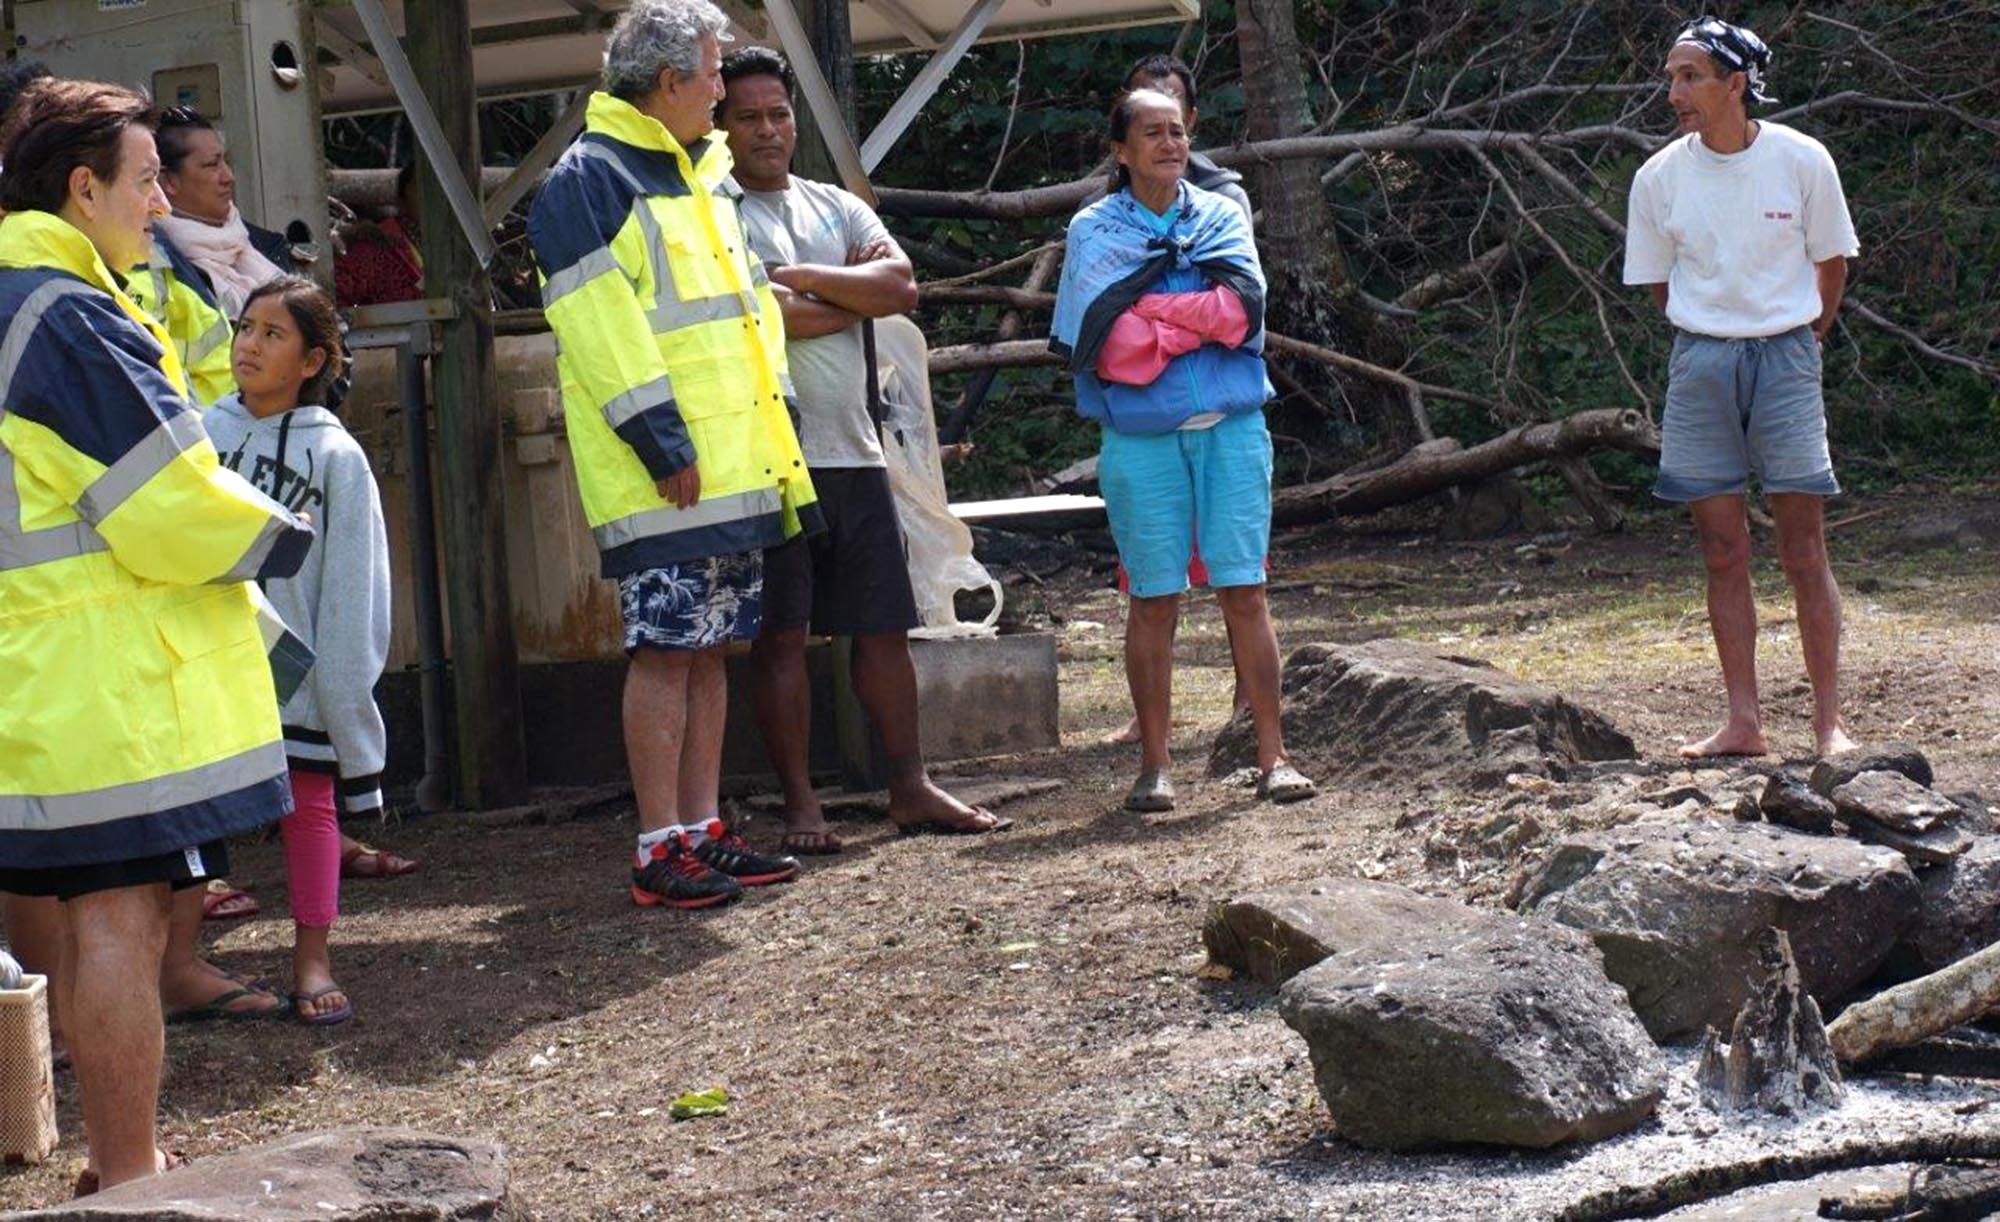 La délégation a également rendu visite à la famille sinistrée de l’incendie à Taravai.